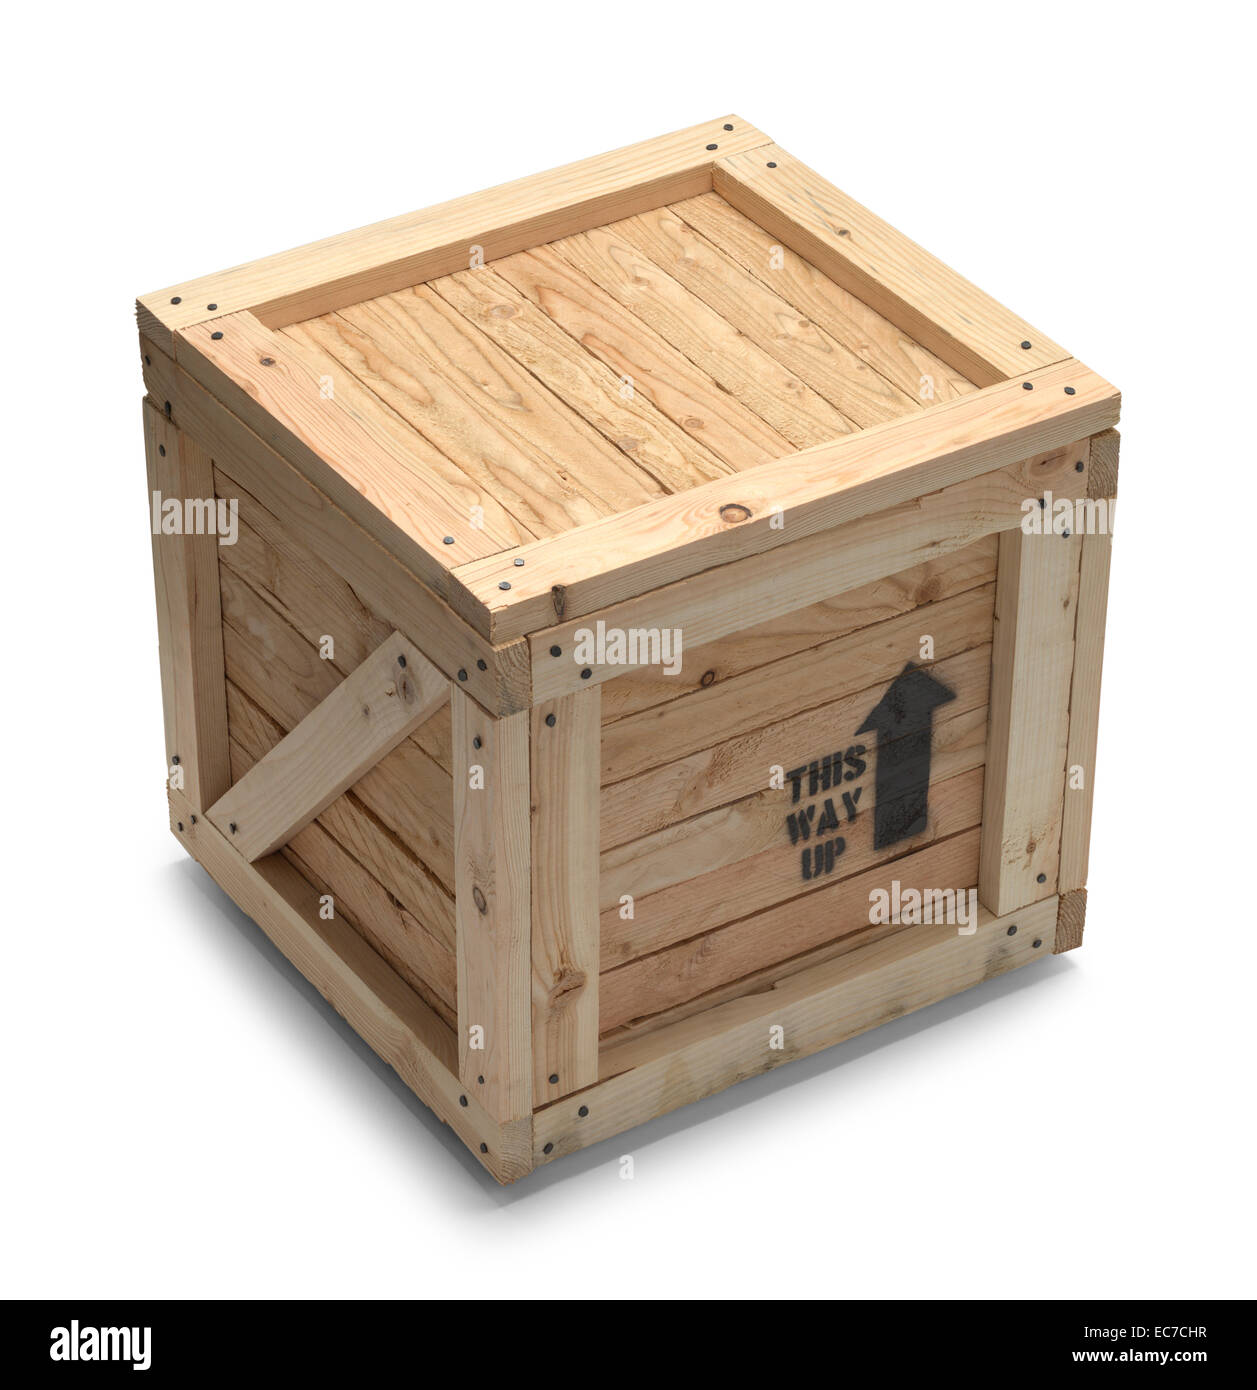 Holz Kiste Box mit textfreiraum Isolated on White Background. Stockfoto